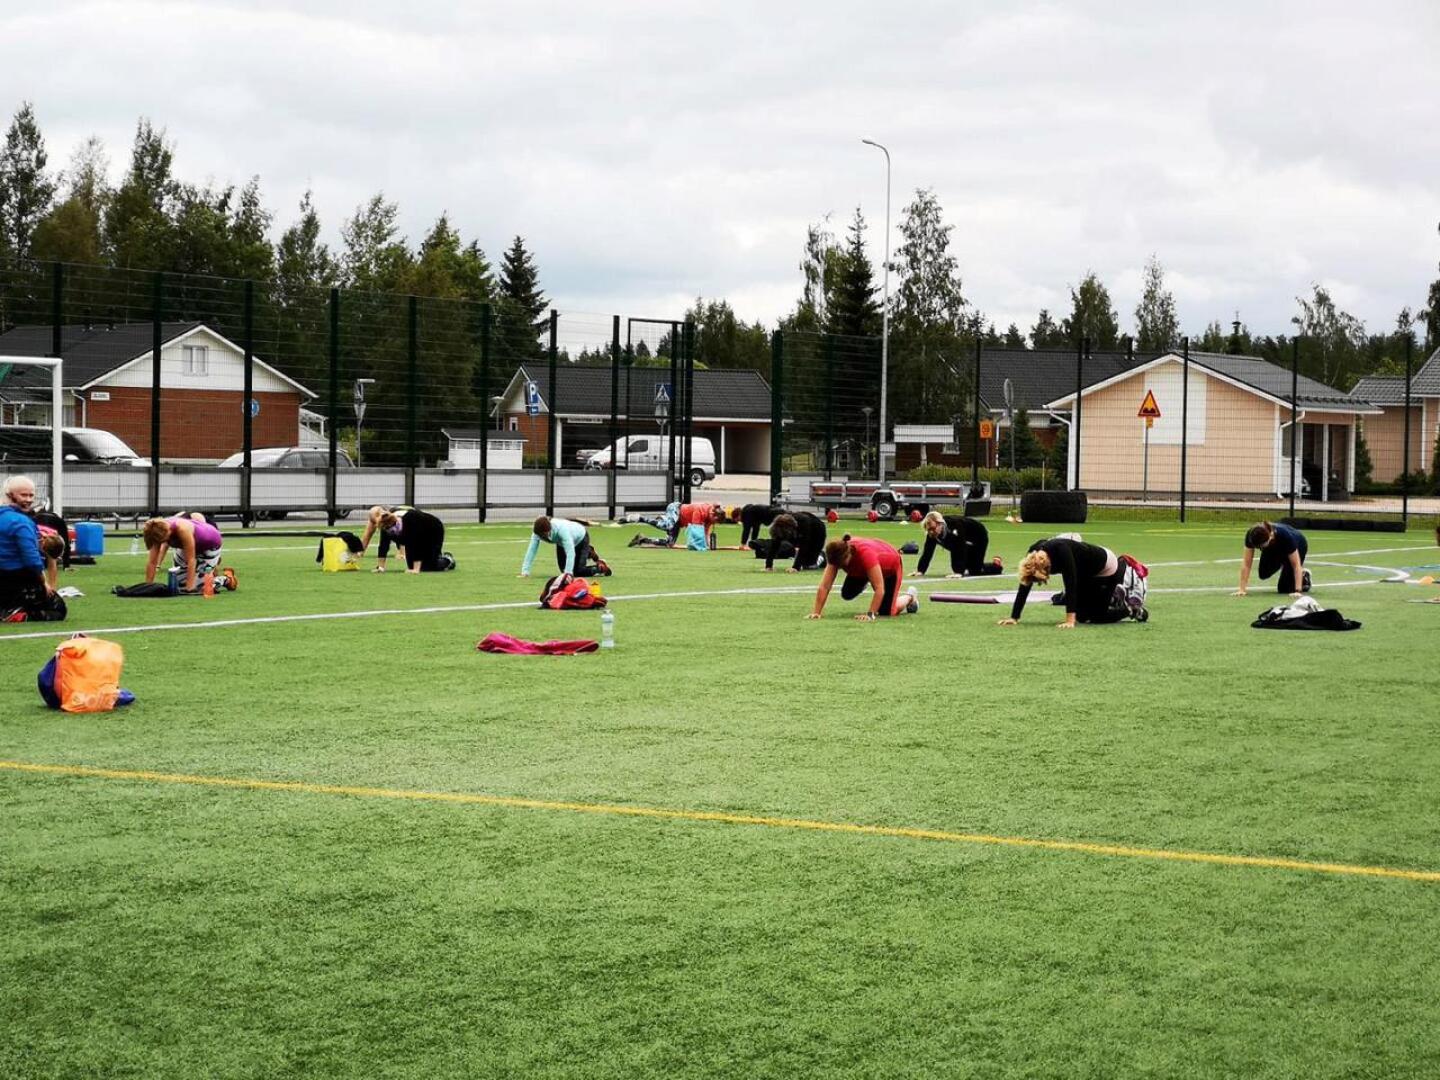 Nivalan kaupungin panostukset liikunta- ja urheiluolosuhteisiin, kuten tekonurmikentän rakentaminen, huomioitiin Keski-Pohjanmaan Urheilugaalassa.